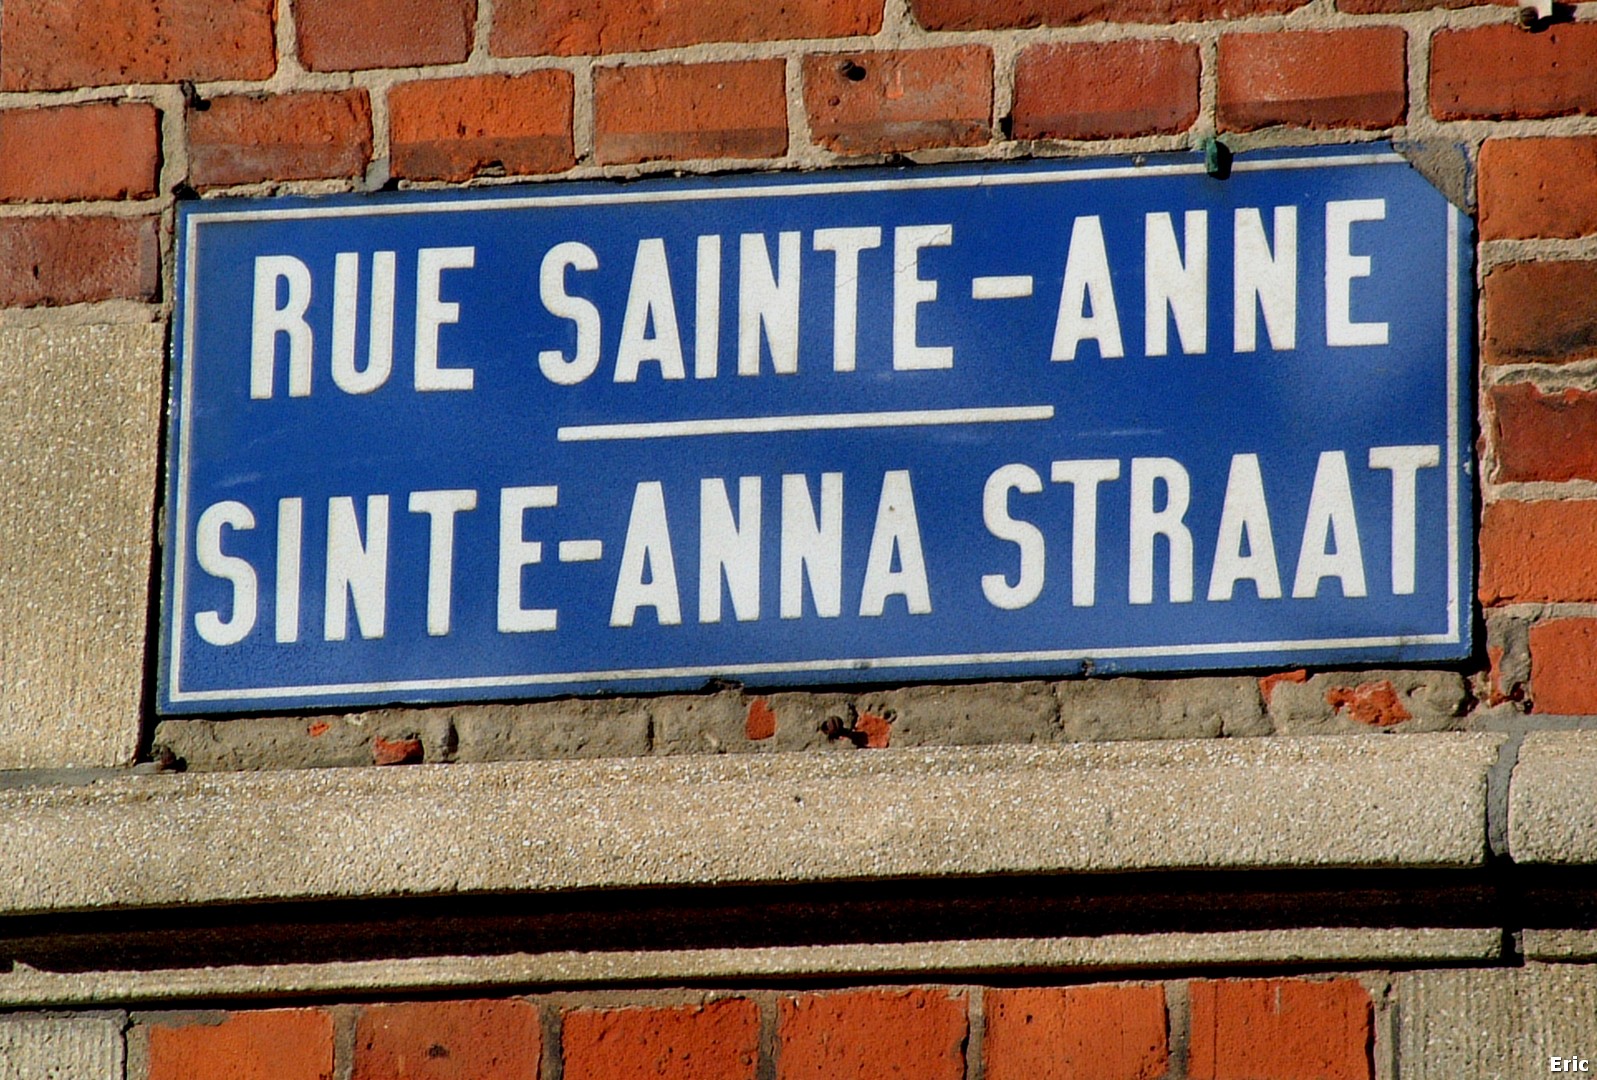  Sainte-Anne